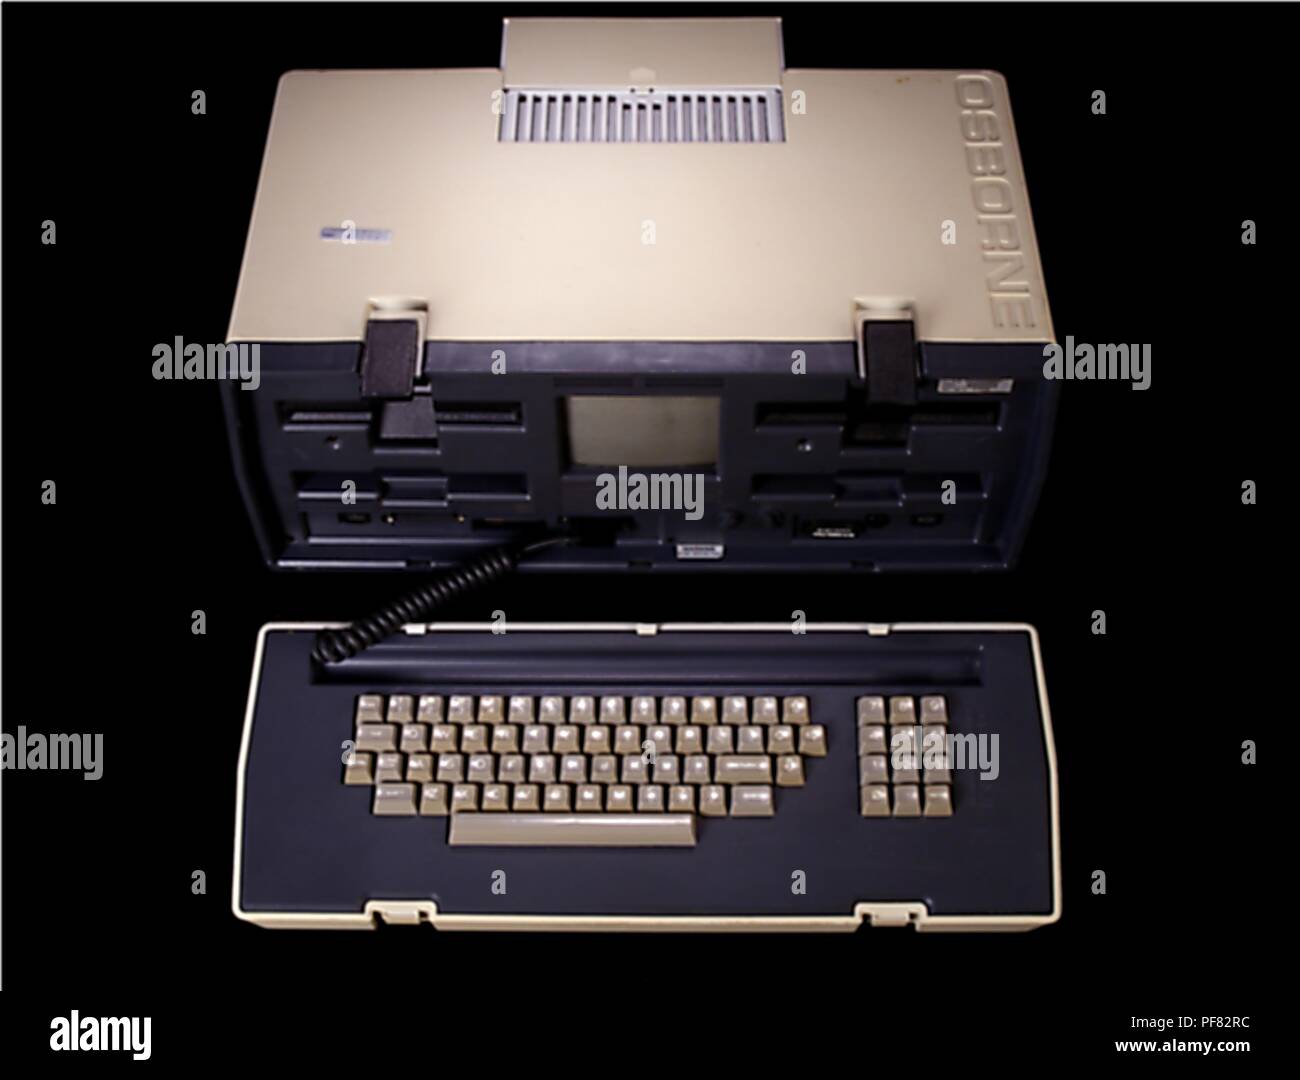 Osborne 1, il primo vero computer portatile, 2004. Immagine cortesia di centri per il controllo delle malattie (CDC) / James Gathany. () Foto Stock